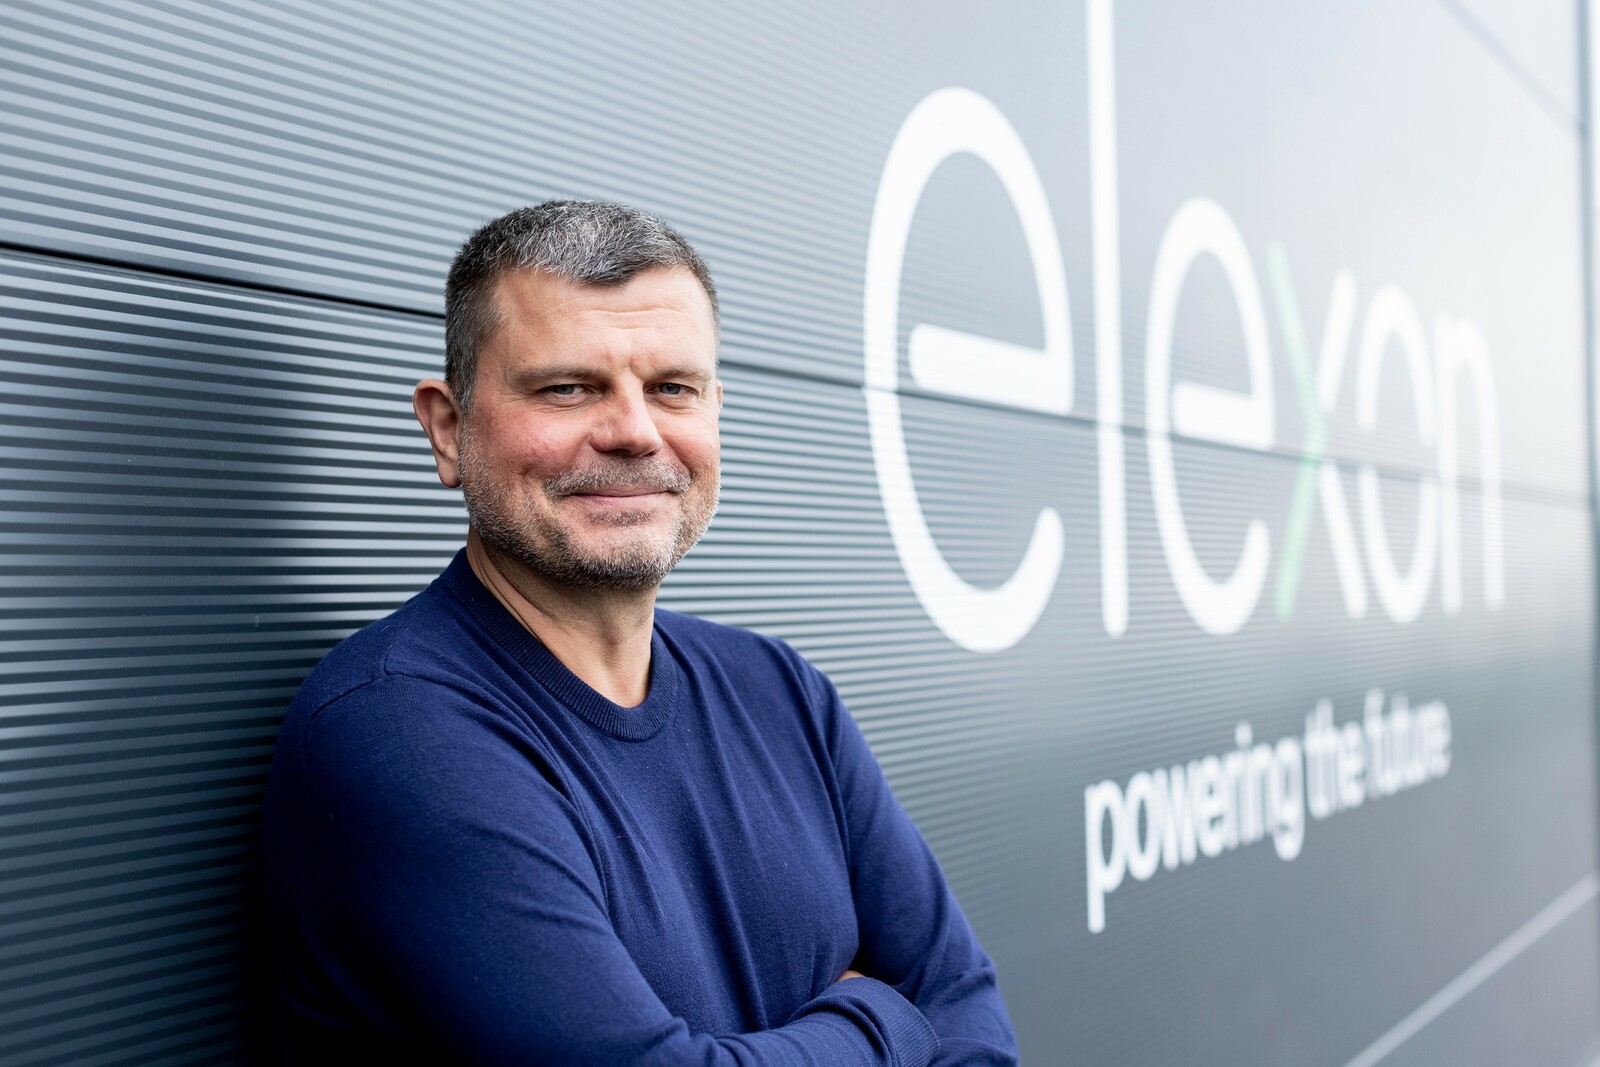 Seit Oktober 2020 ist Marcus Scholz Geschäftsführer von elexon in Aachen. Das Unternehmen entwickelt und stellt in Deutschland Elektroladelösungen her und agiert als Anbieter von Ladeinfrastruktur und Energiemanagement.